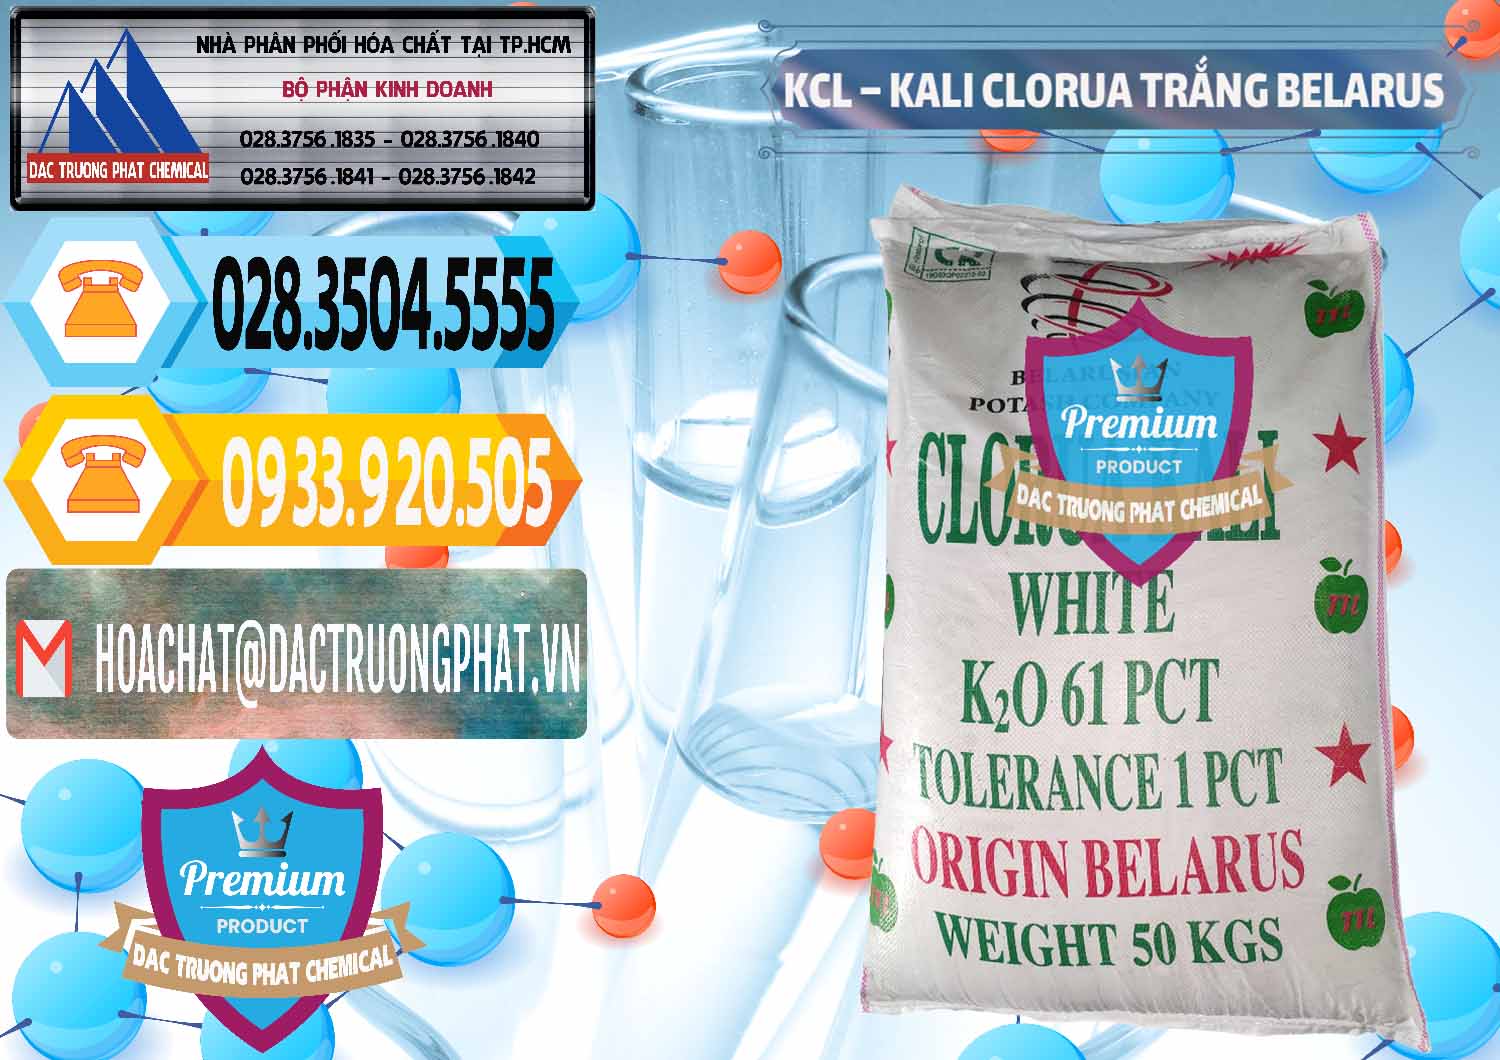 Nơi bán - phân phối KCL – Kali Clorua Trắng Belarus - 0085 - Nhà phân phối và cung cấp hóa chất tại TP.HCM - hoachattayrua.net